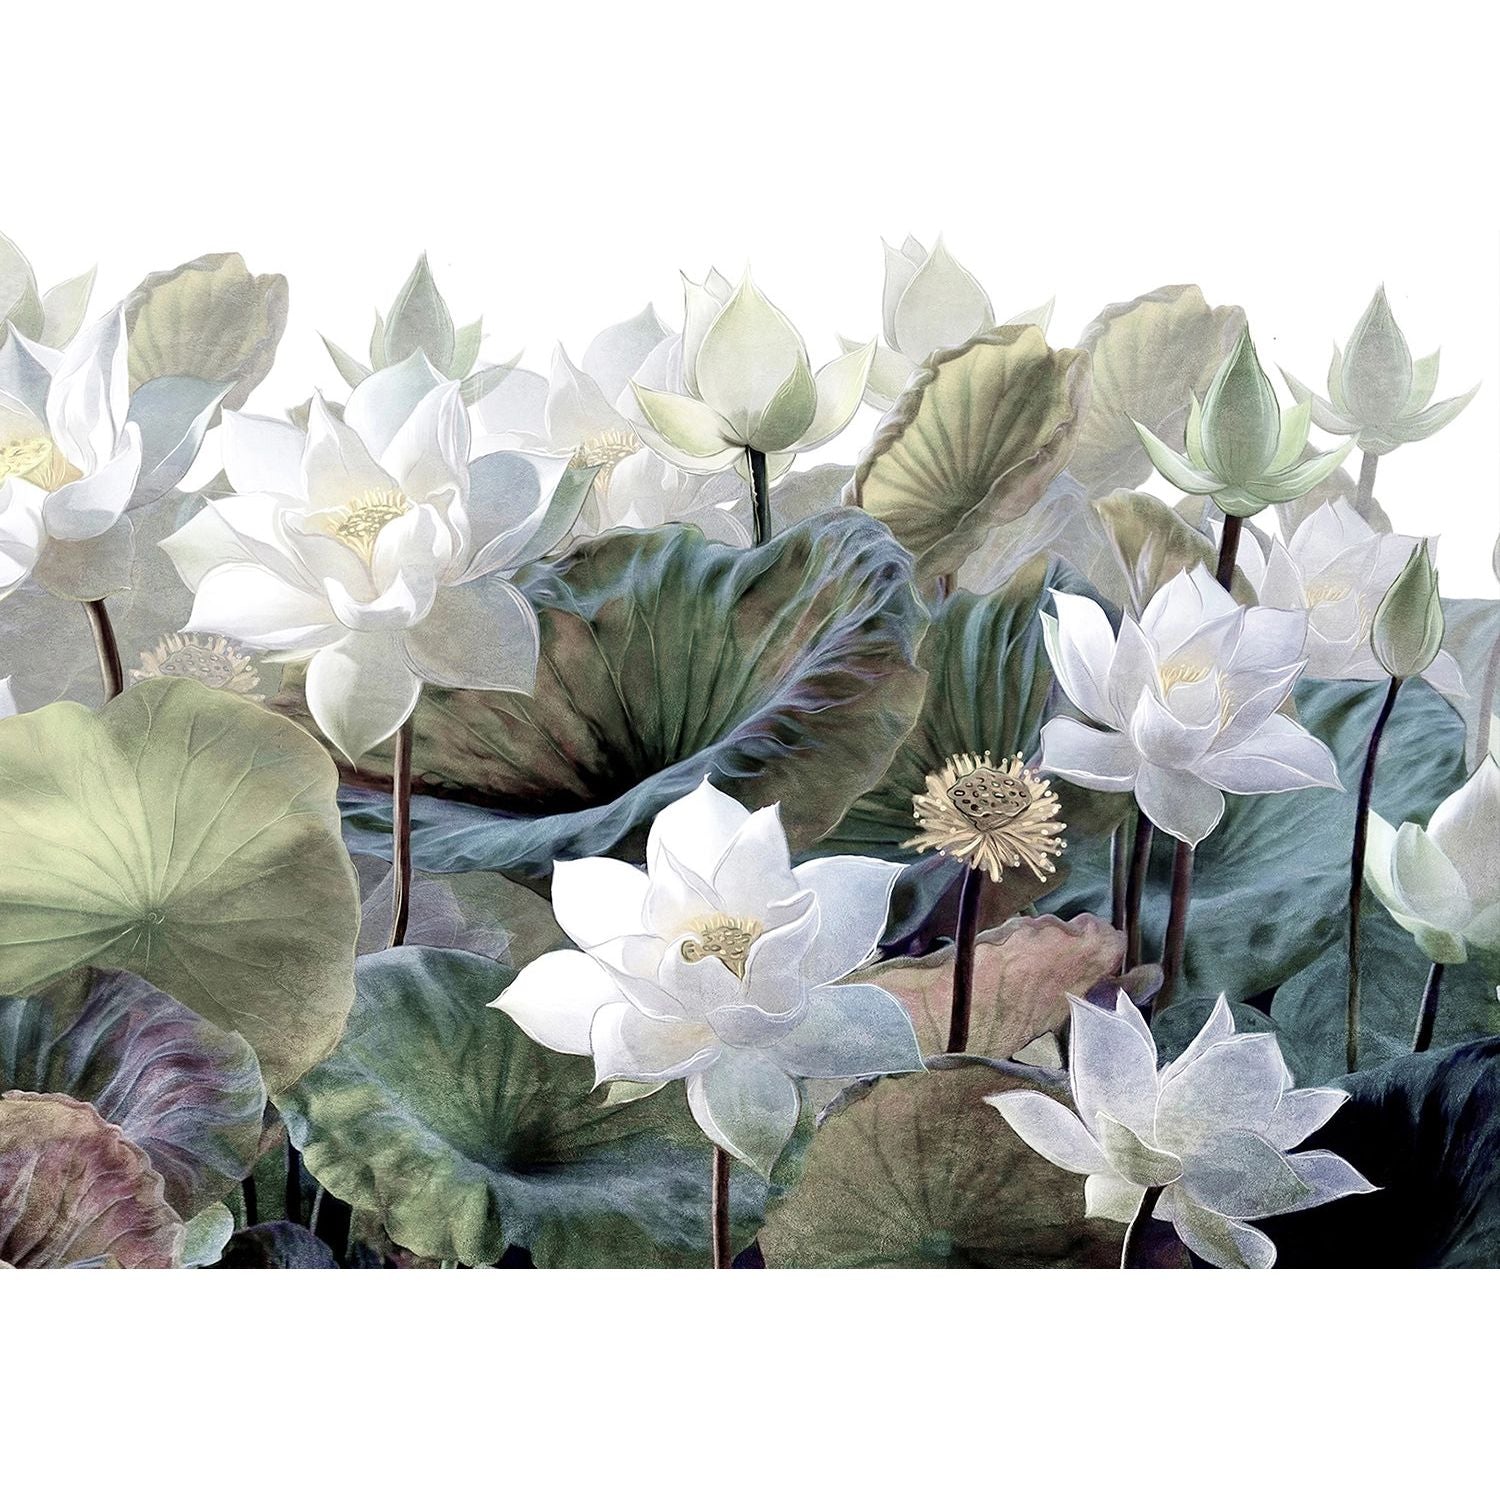 Blooming Elegance: Big White Flowers Wall Mural